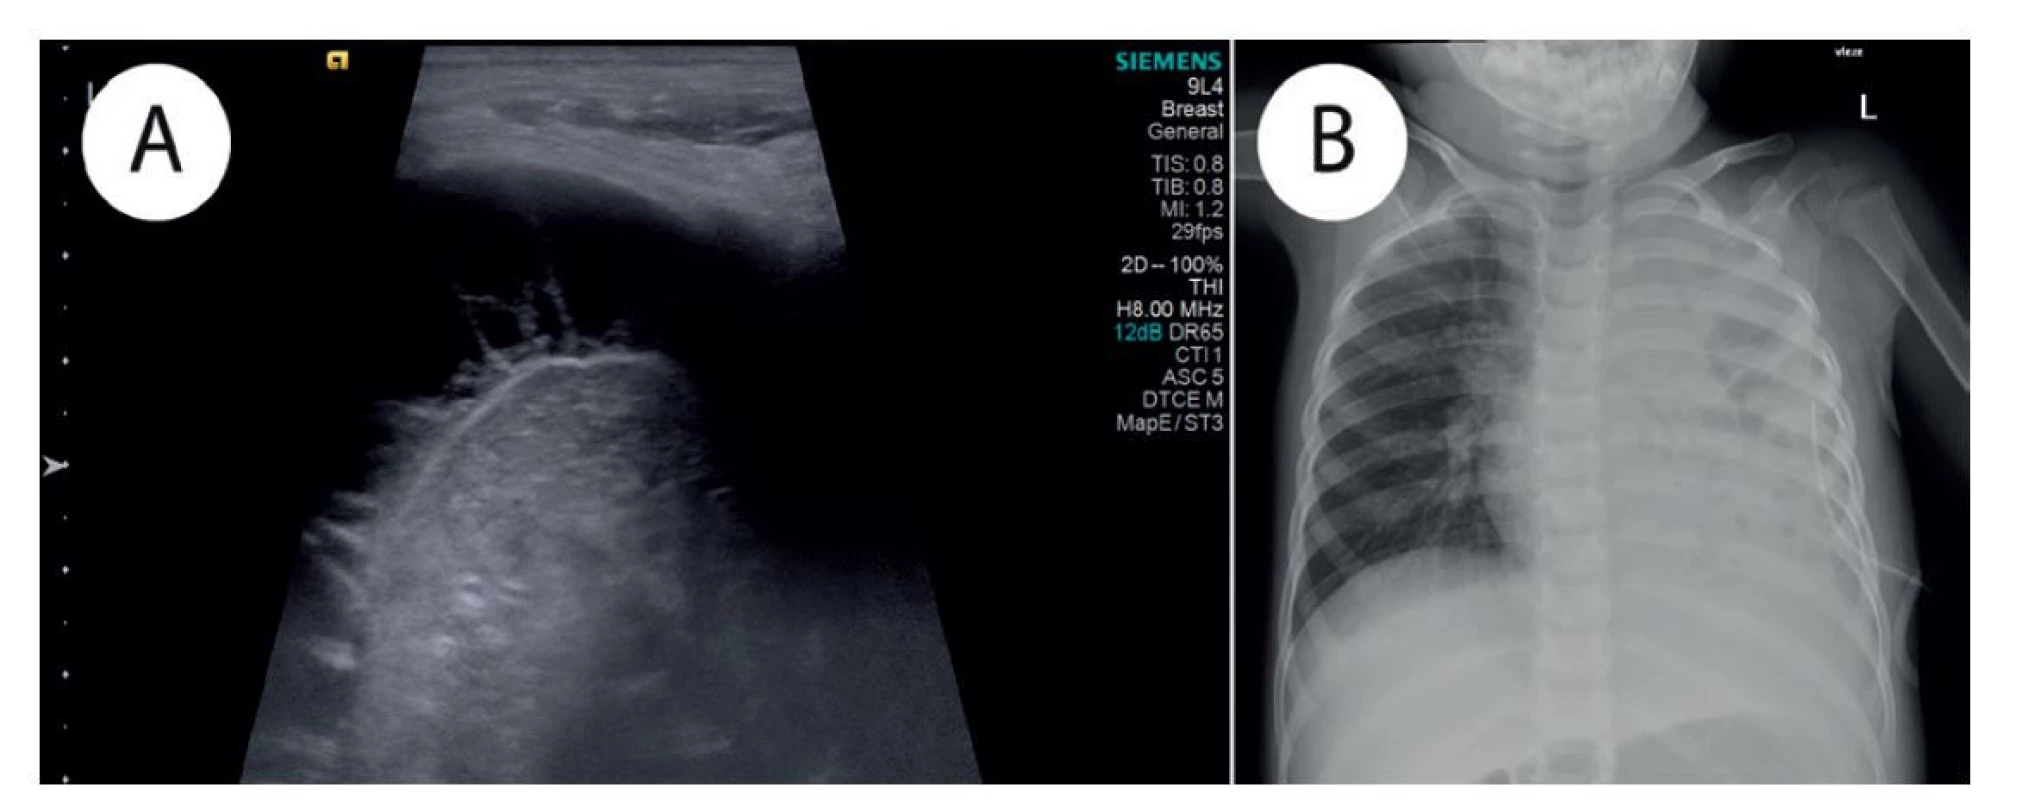 a) Ultrazvukové vyšetření − septovaný pleurální výpotek; b) Prostý RTG snímek hrudníku v AP projekci, vleže −
subtotální zastření levého hemithoraxu s okrsky projasnění na podkladě rozpadu plicního křídla a pleurálního výpotku;
zavedený hrudní drén.<br>
Fig. 1: a) Ultrasound examination − septated pleural effusion; b) Plain chest radiograph, AP view, supine − subtotal
opacification of left hemithorax with small lucencies based on necrotizing pneumonitis and pleural effusion; chest tube
in place.